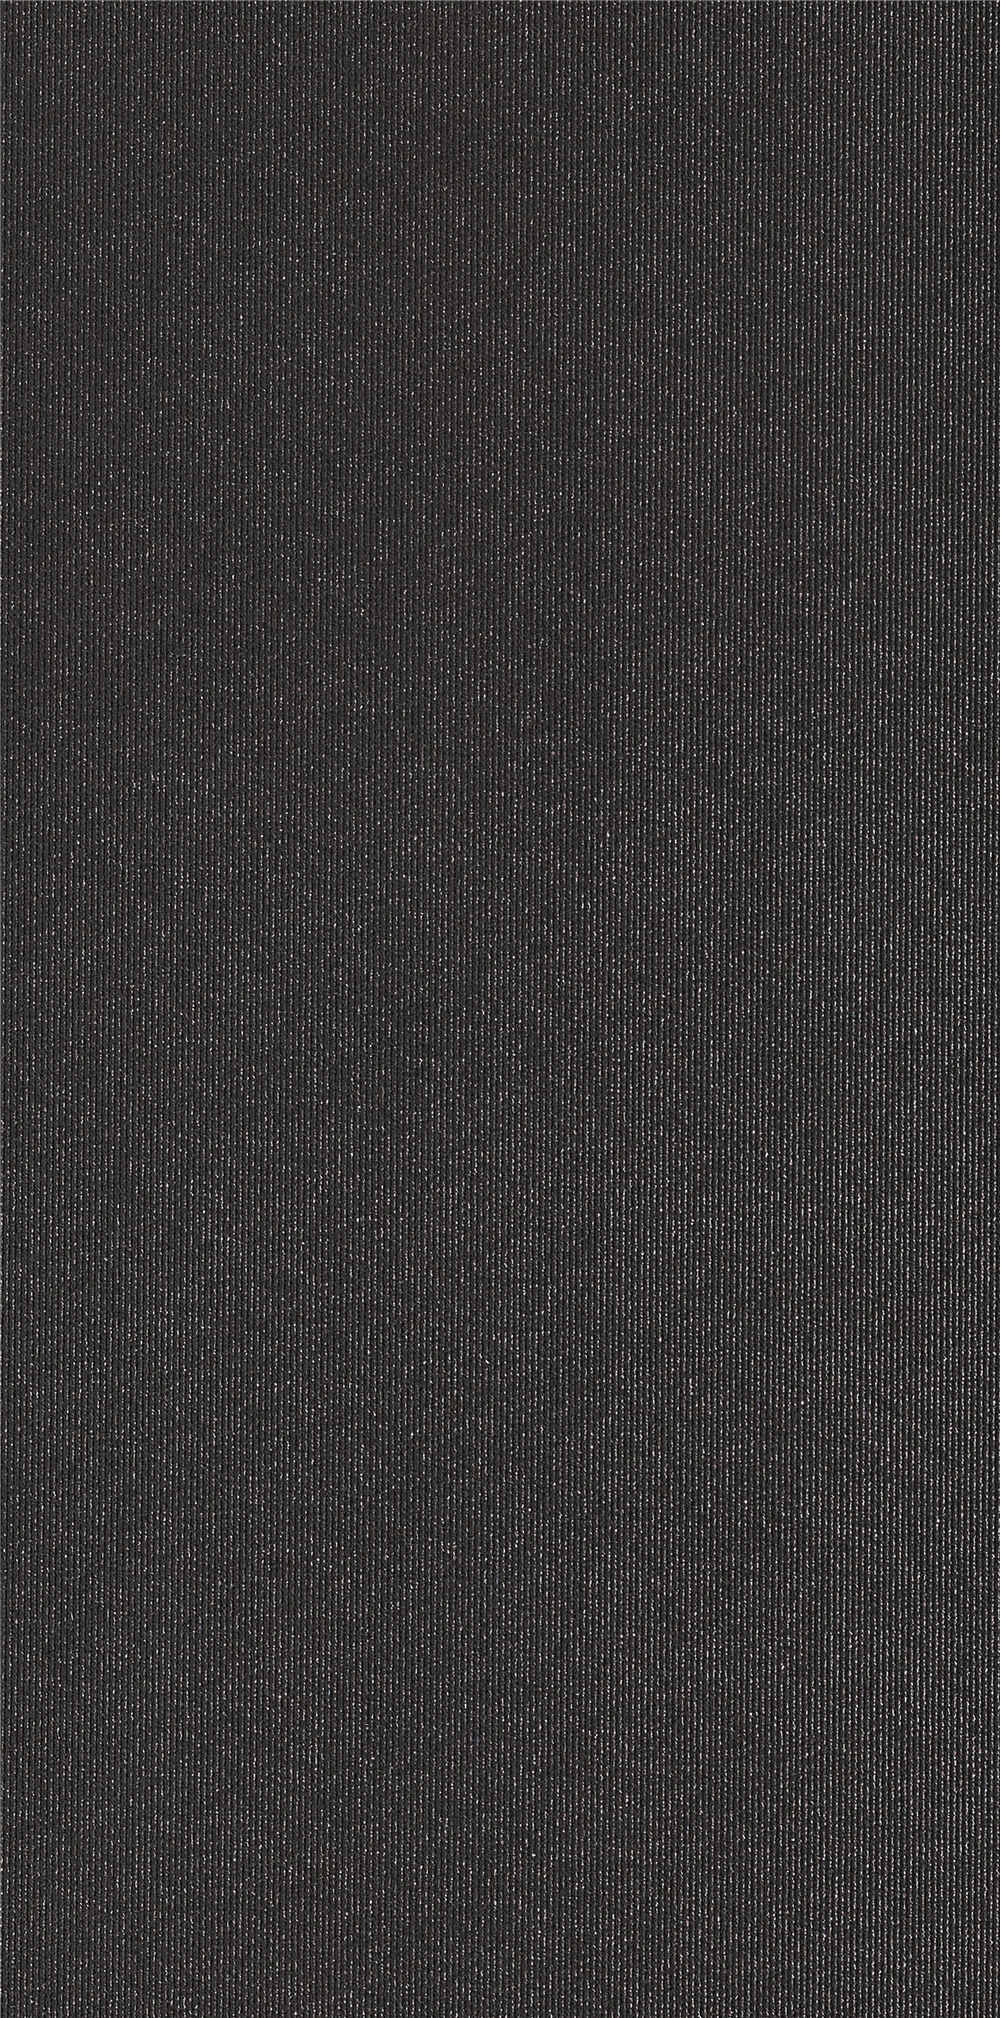 KF-XI1T126013 星空黑纯色瓷砖